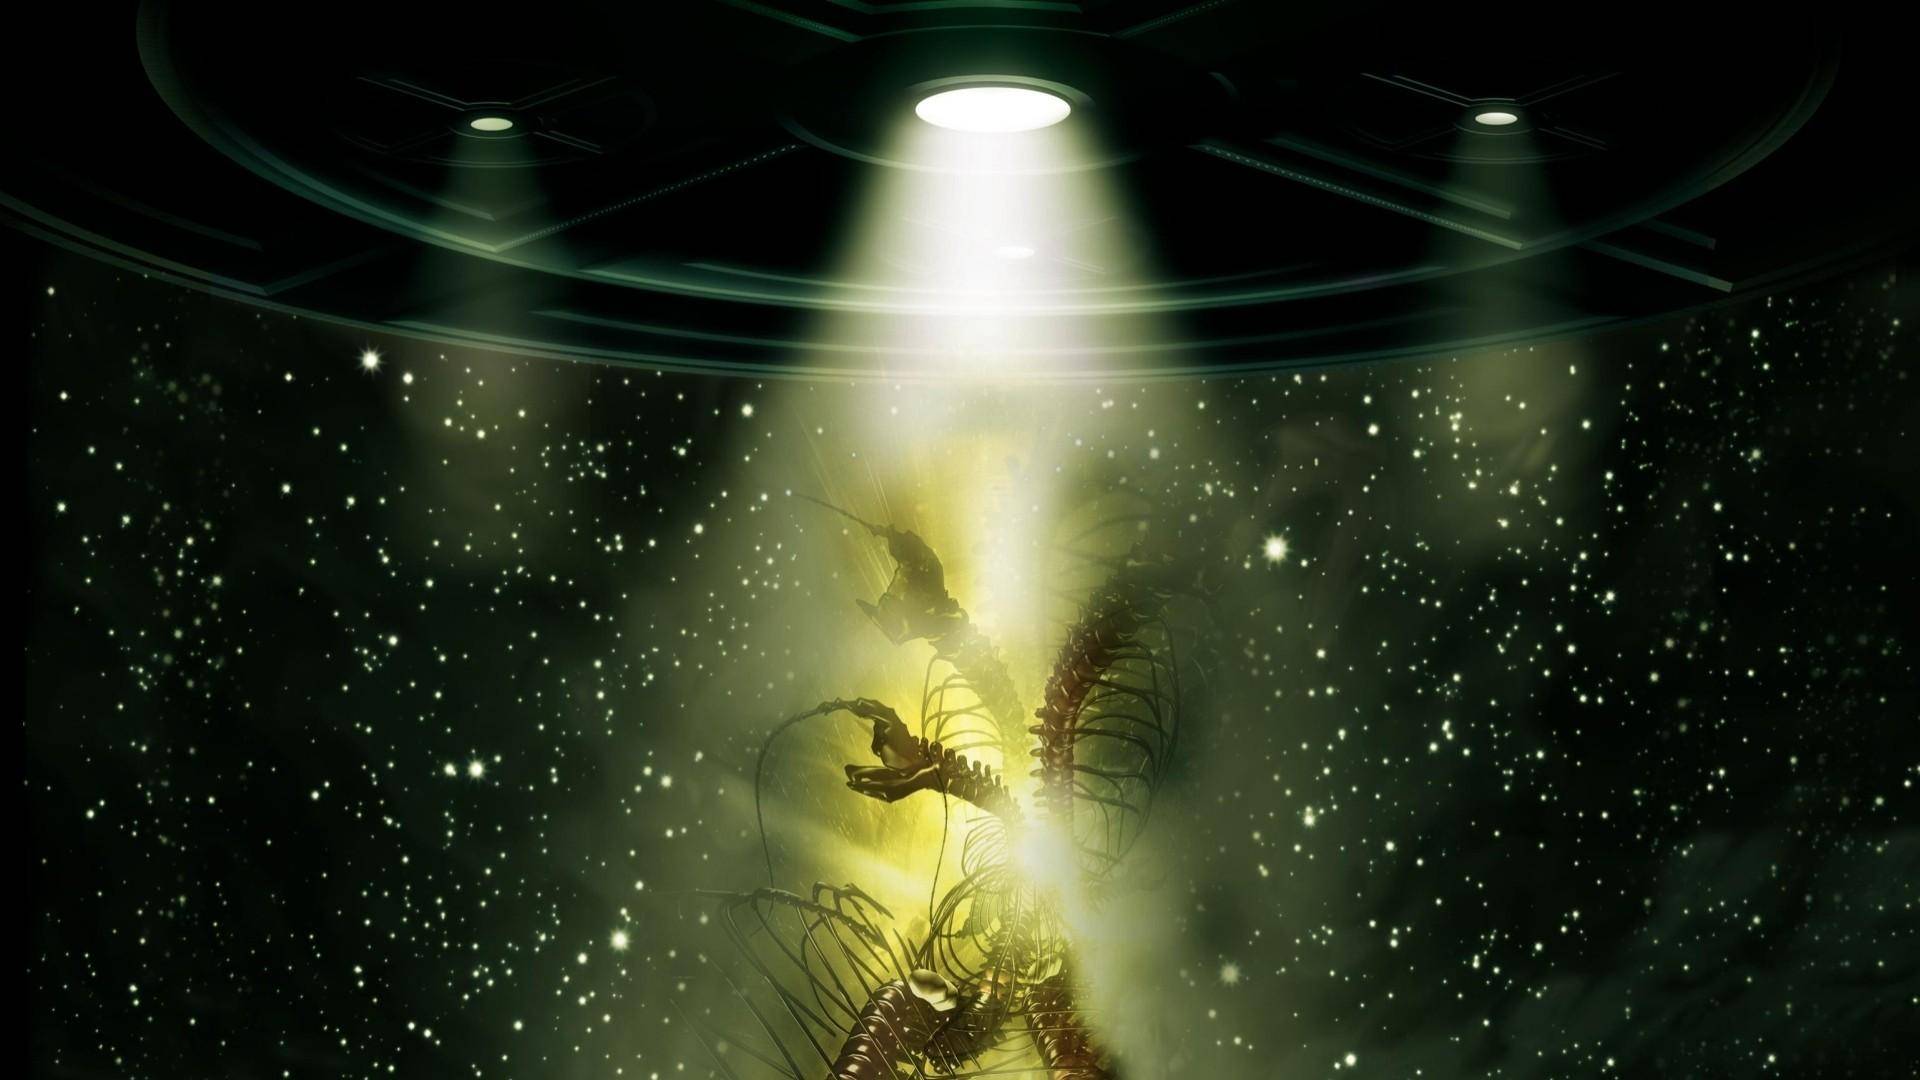 Alien Raiders Wallpaper Science Fiction